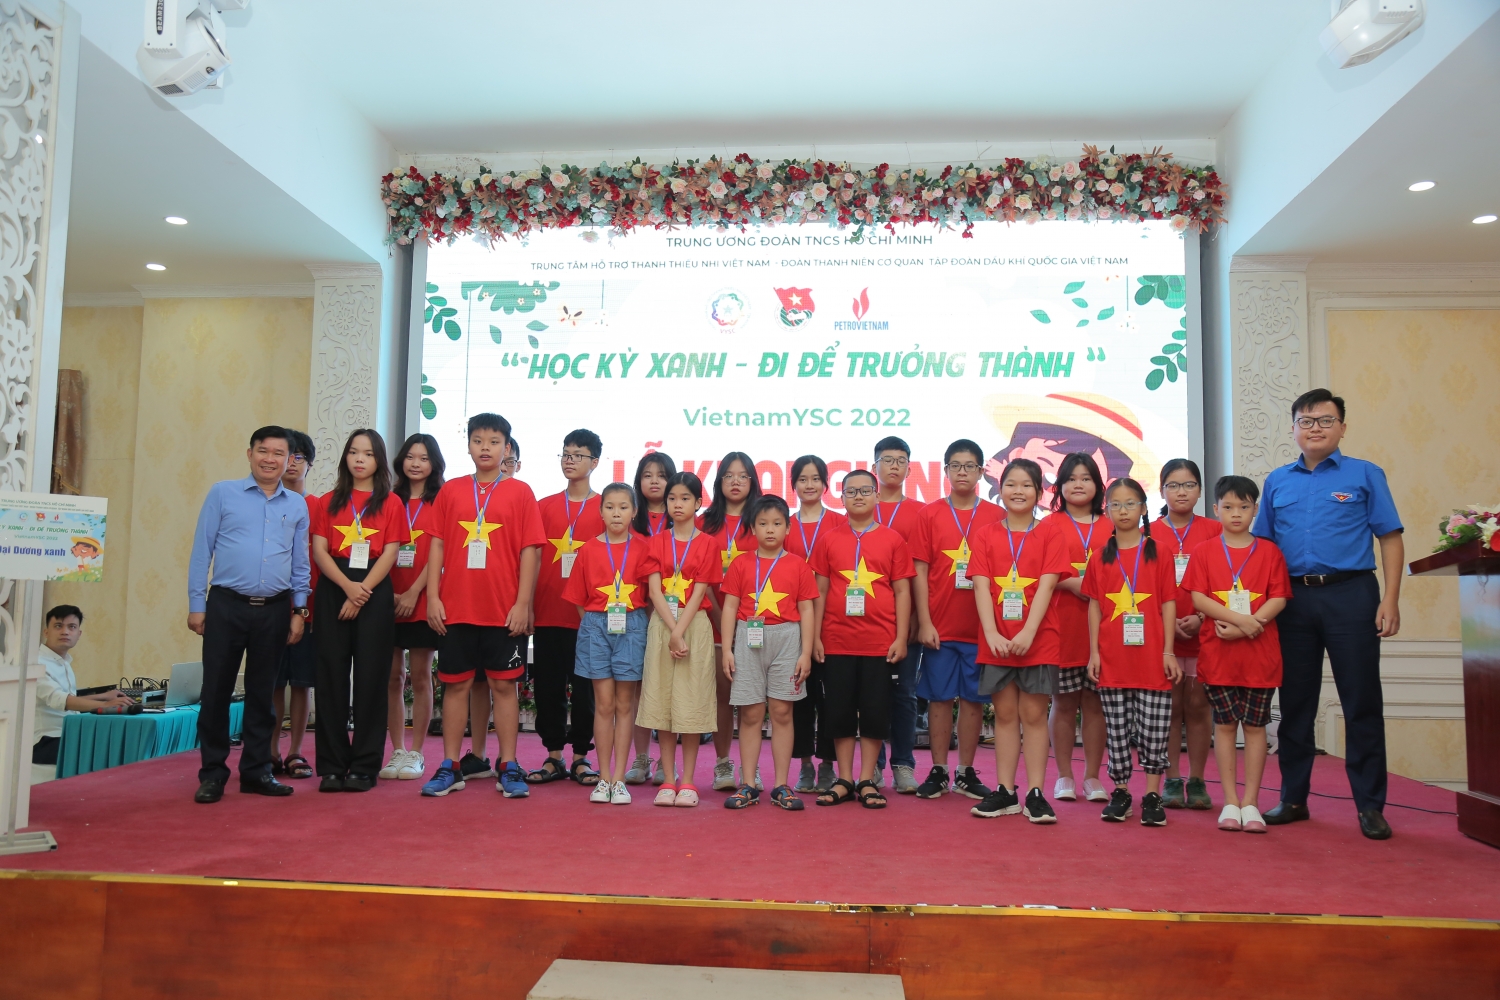 Đoàn Thanh niên Cơ quan Tập đoàn tổ chức chương trình “Học kỳ xanh - Đi để trưởng thành”